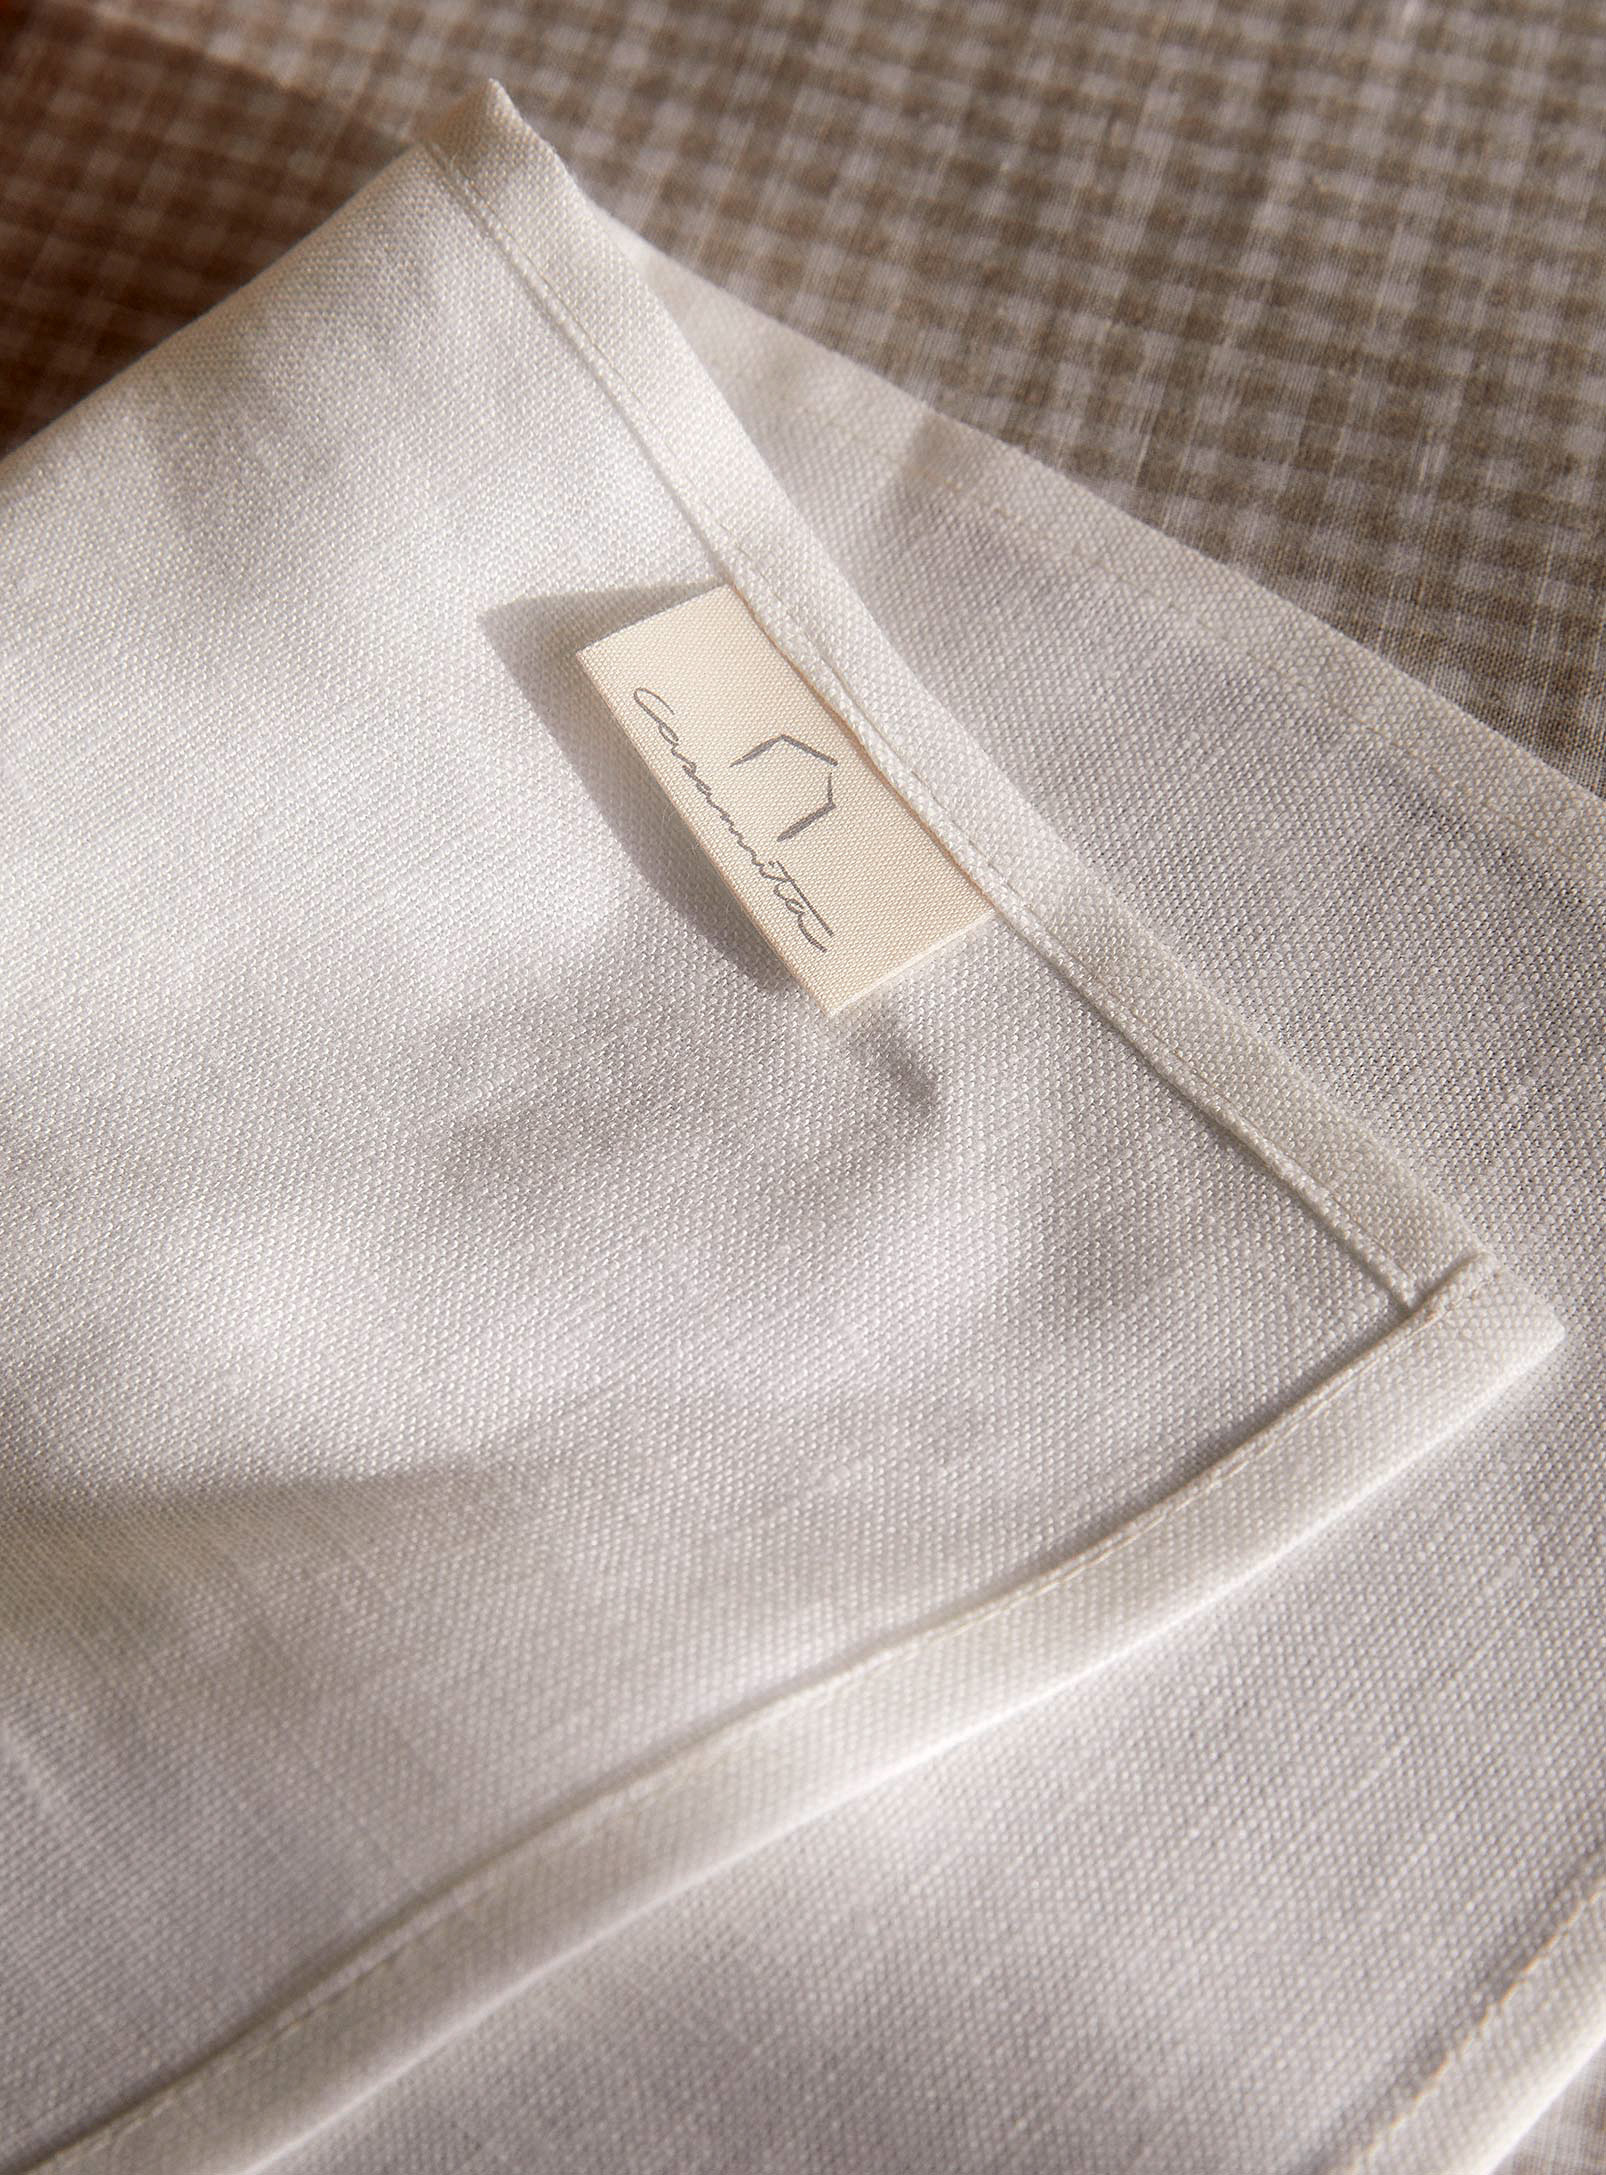 Casannita - Les serviettes de table pur lin blanc crème Ensemble de 2